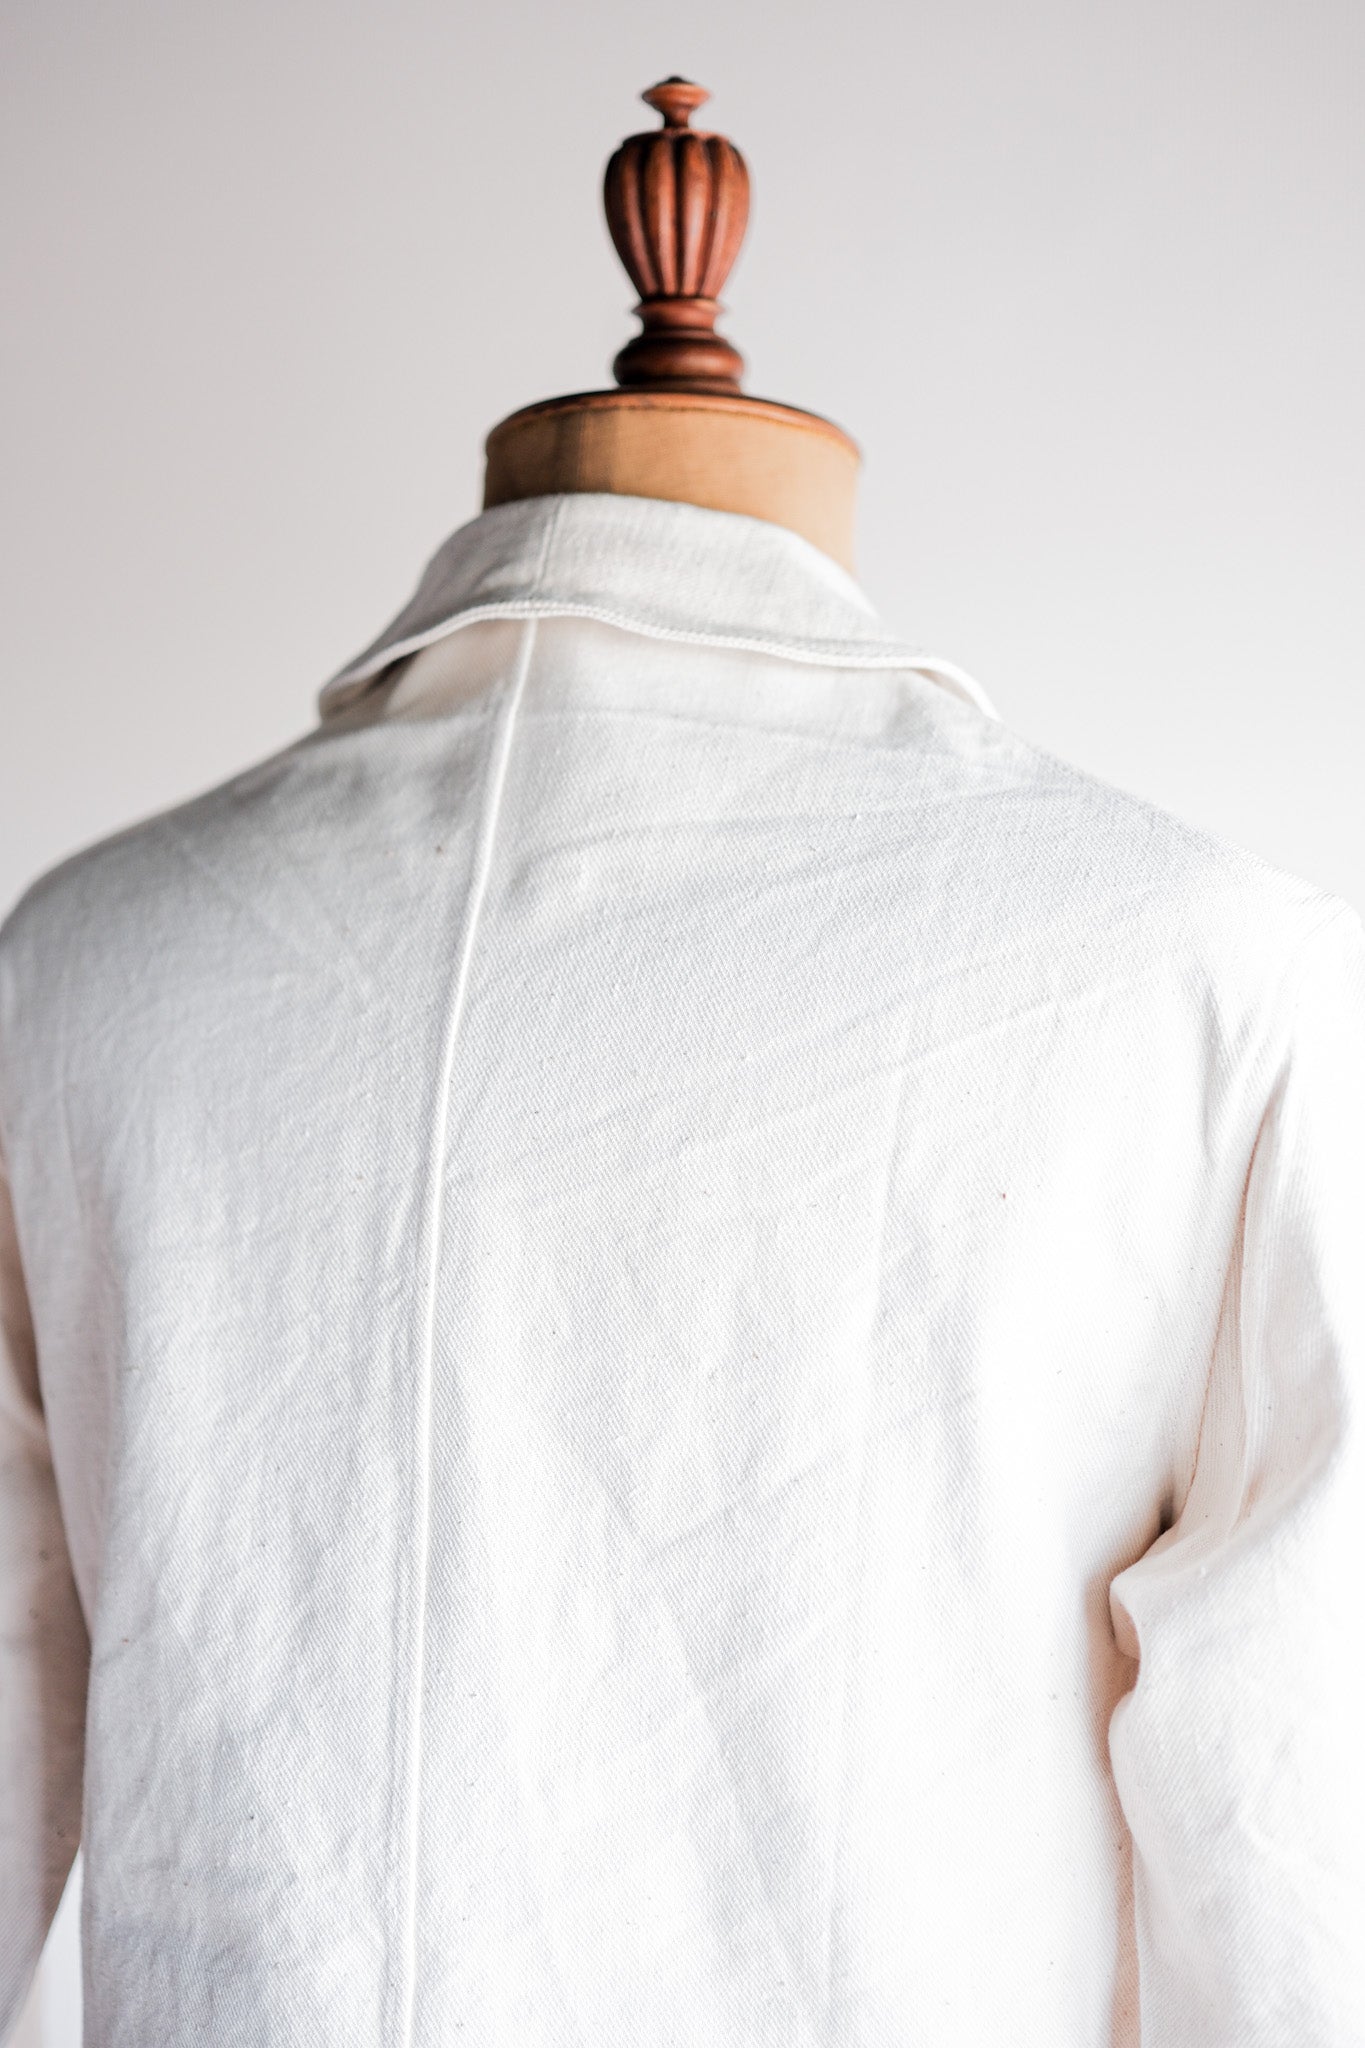 [〜40年代]法國復古白棉型暮色外套。48“死庫存”